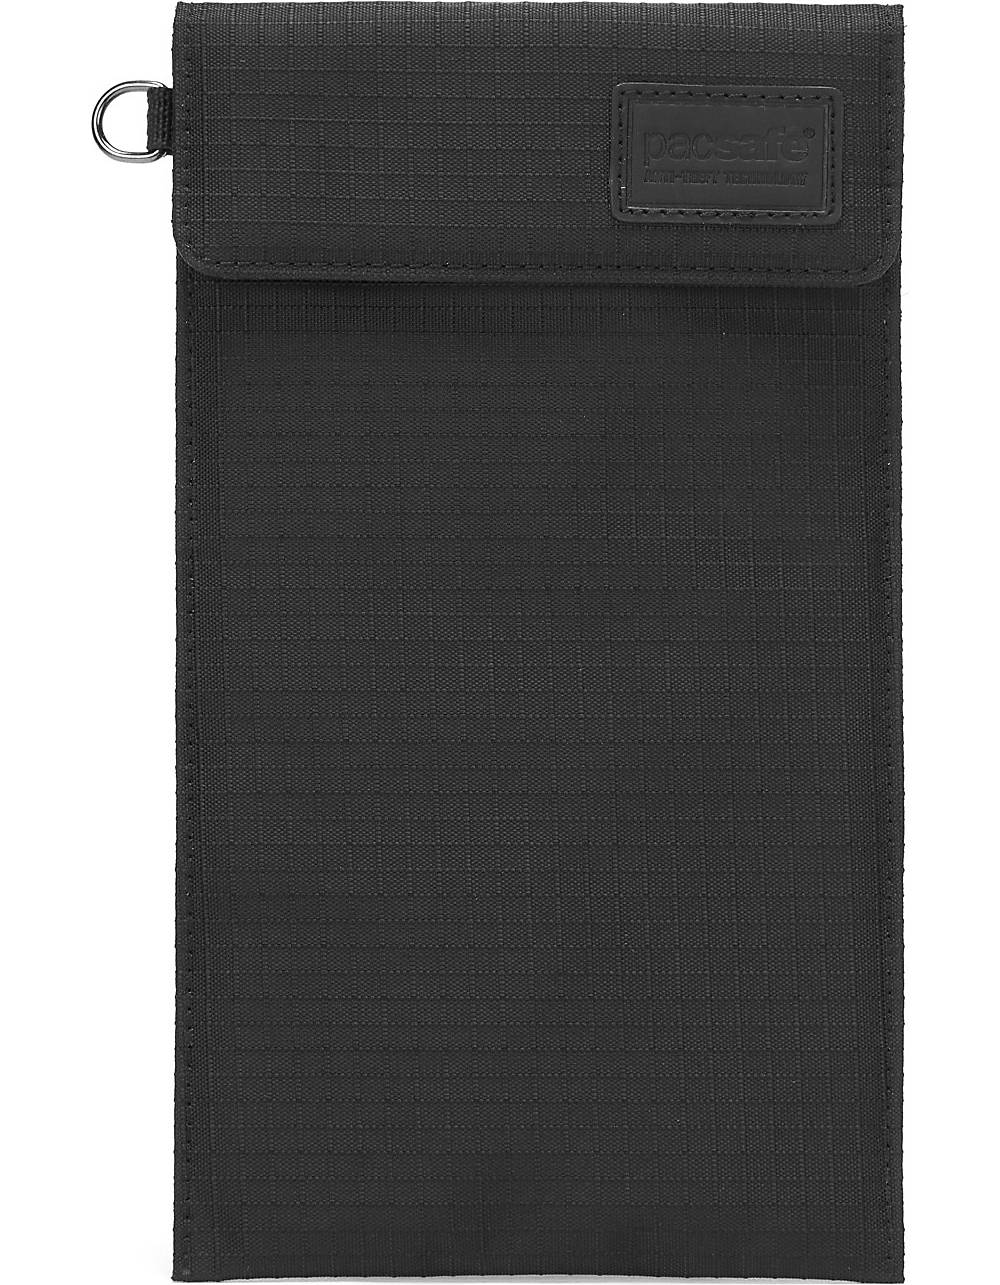 Pacsafe, Rfidsafe Silent Pocket Handytasche Rfid 12 Cm in schwarz, Handyhüllen & Zubehör für Damen